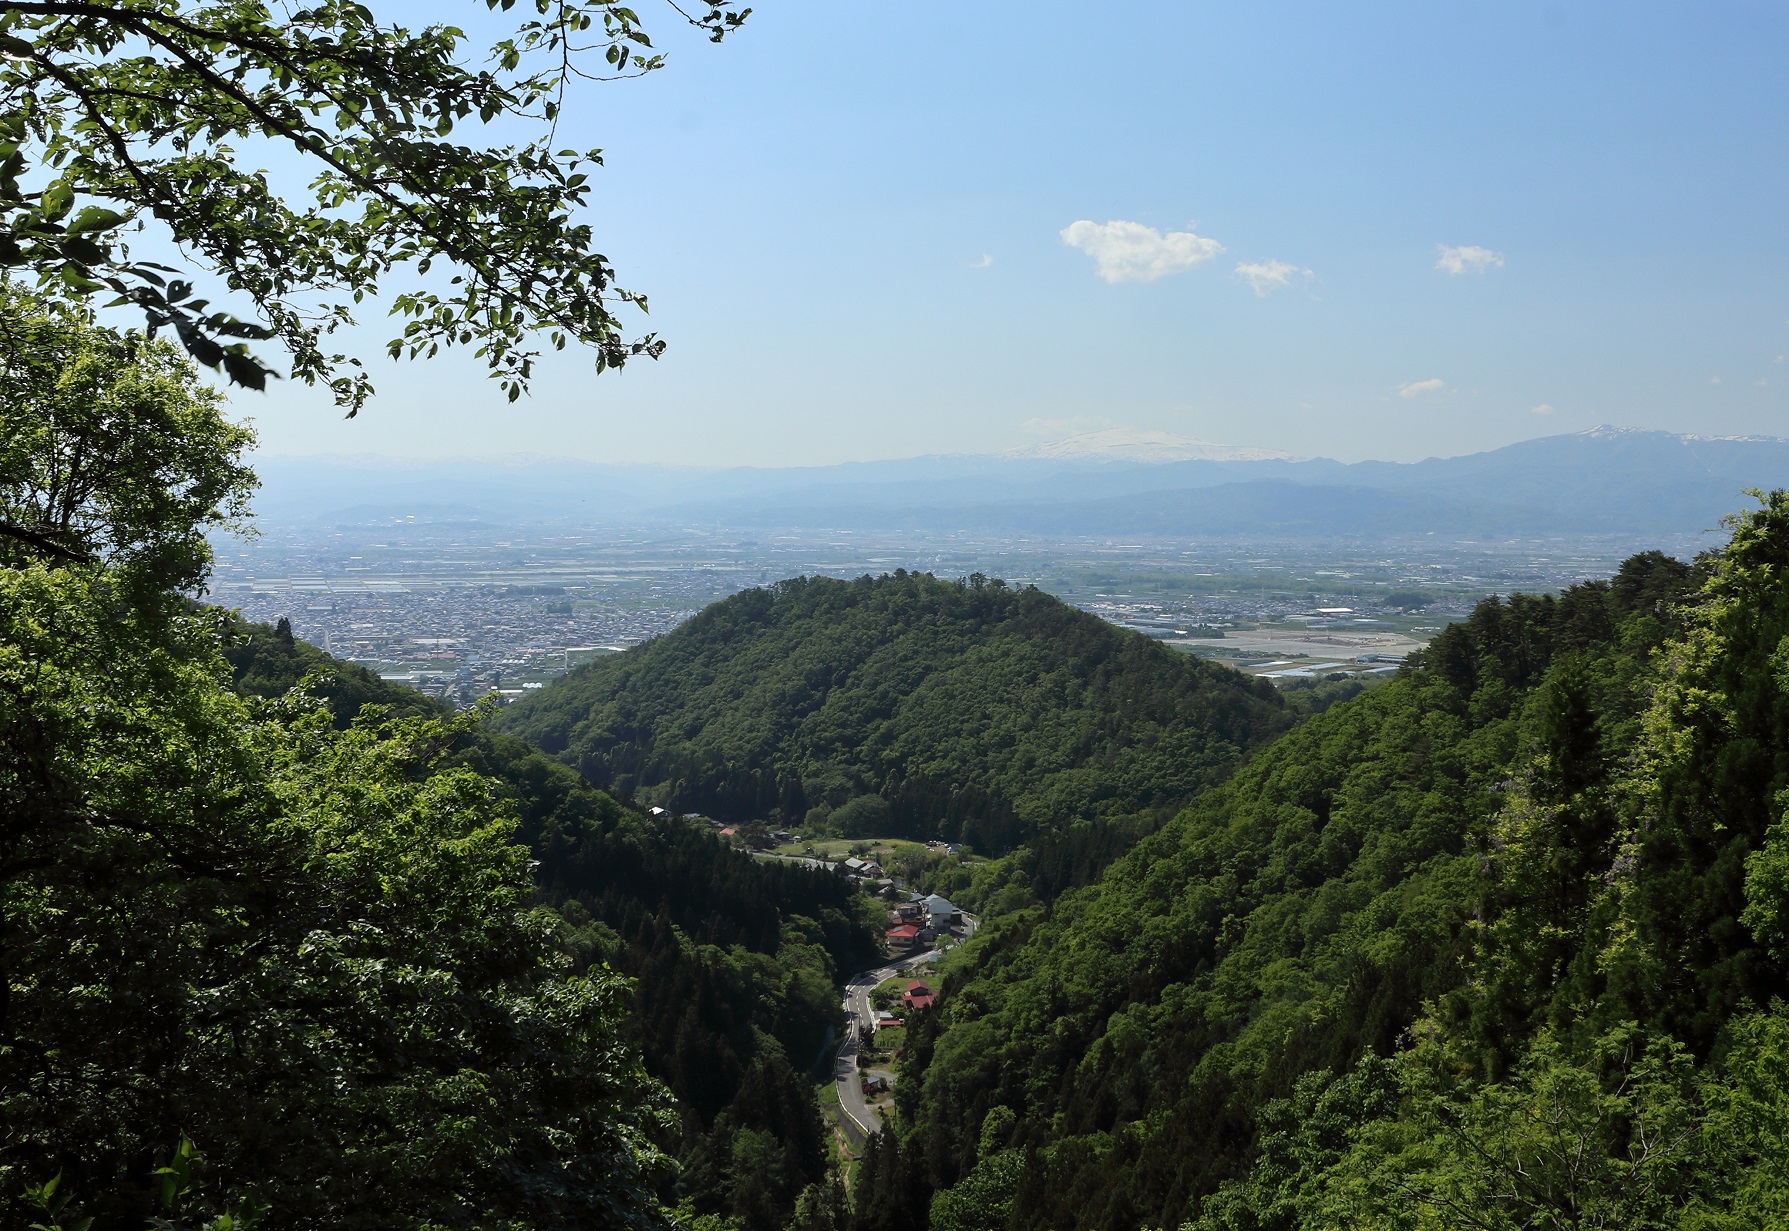 「若松寺と門前町の面影」はやまがた景観物語のおすすめビューポイントに選ばれています。